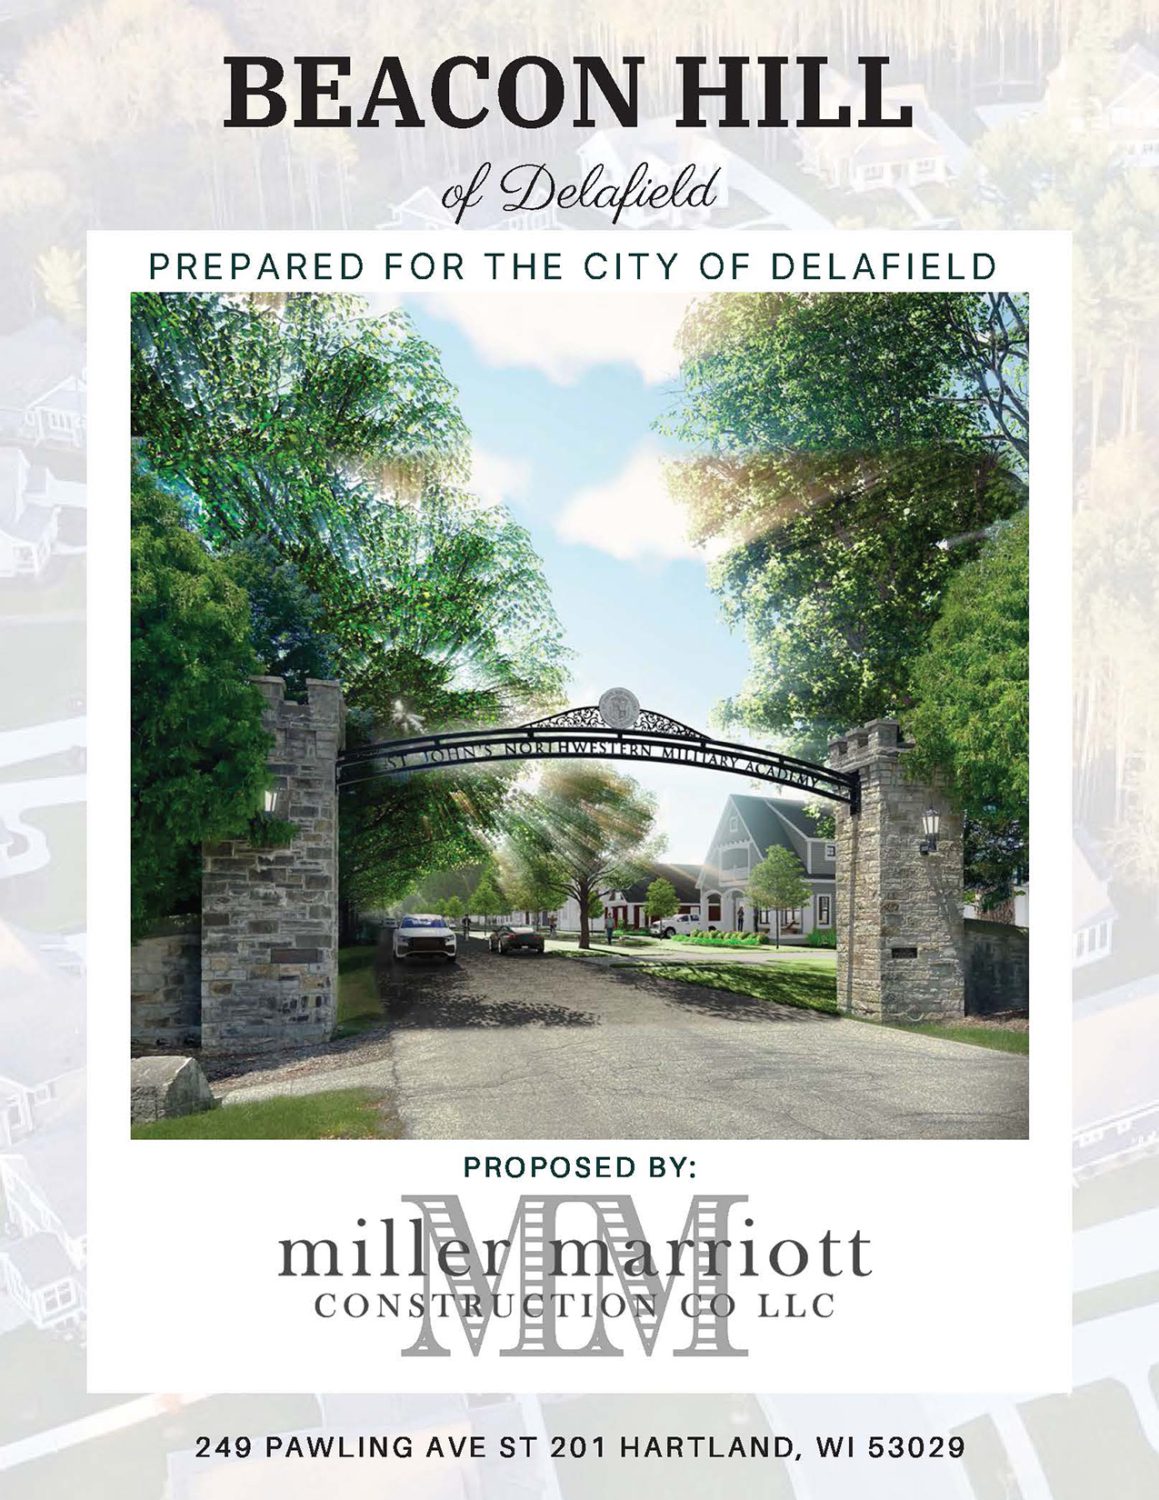 Beacon Hill of Delafield - Miller Marriott Construction